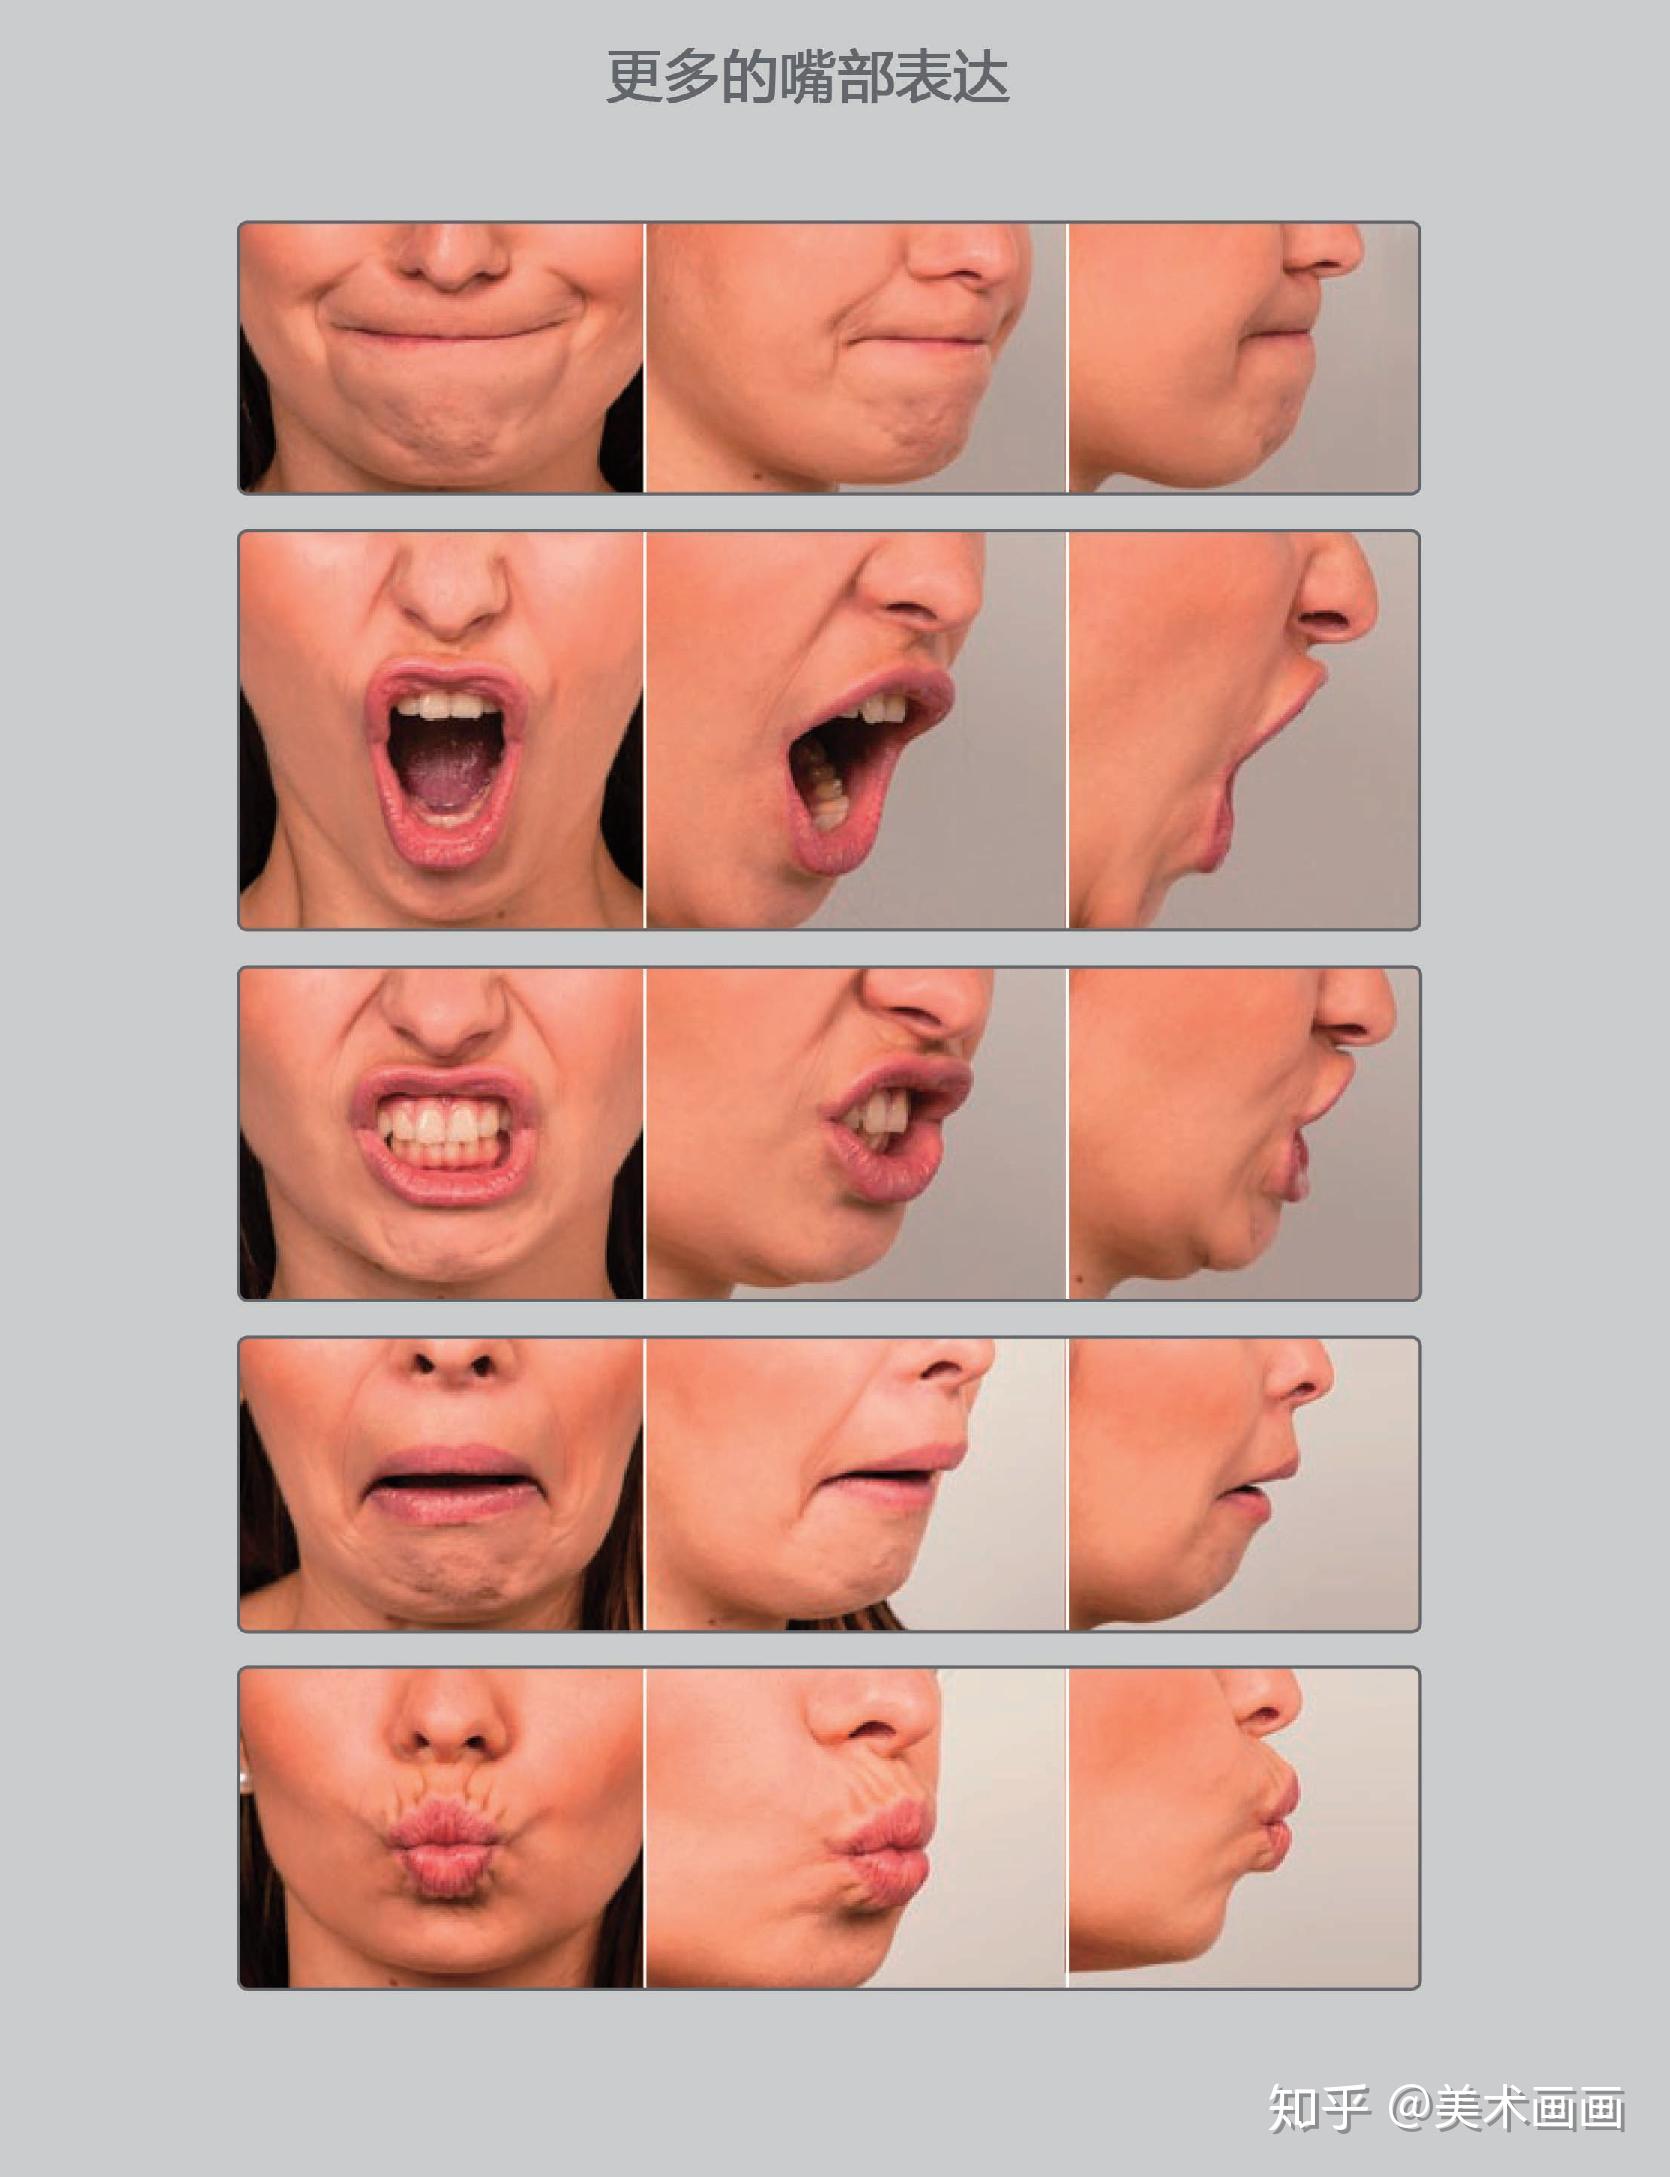 在来看一下嘴部表情的案例,嘴部的变化也是即为丰富的,所以会有不同的